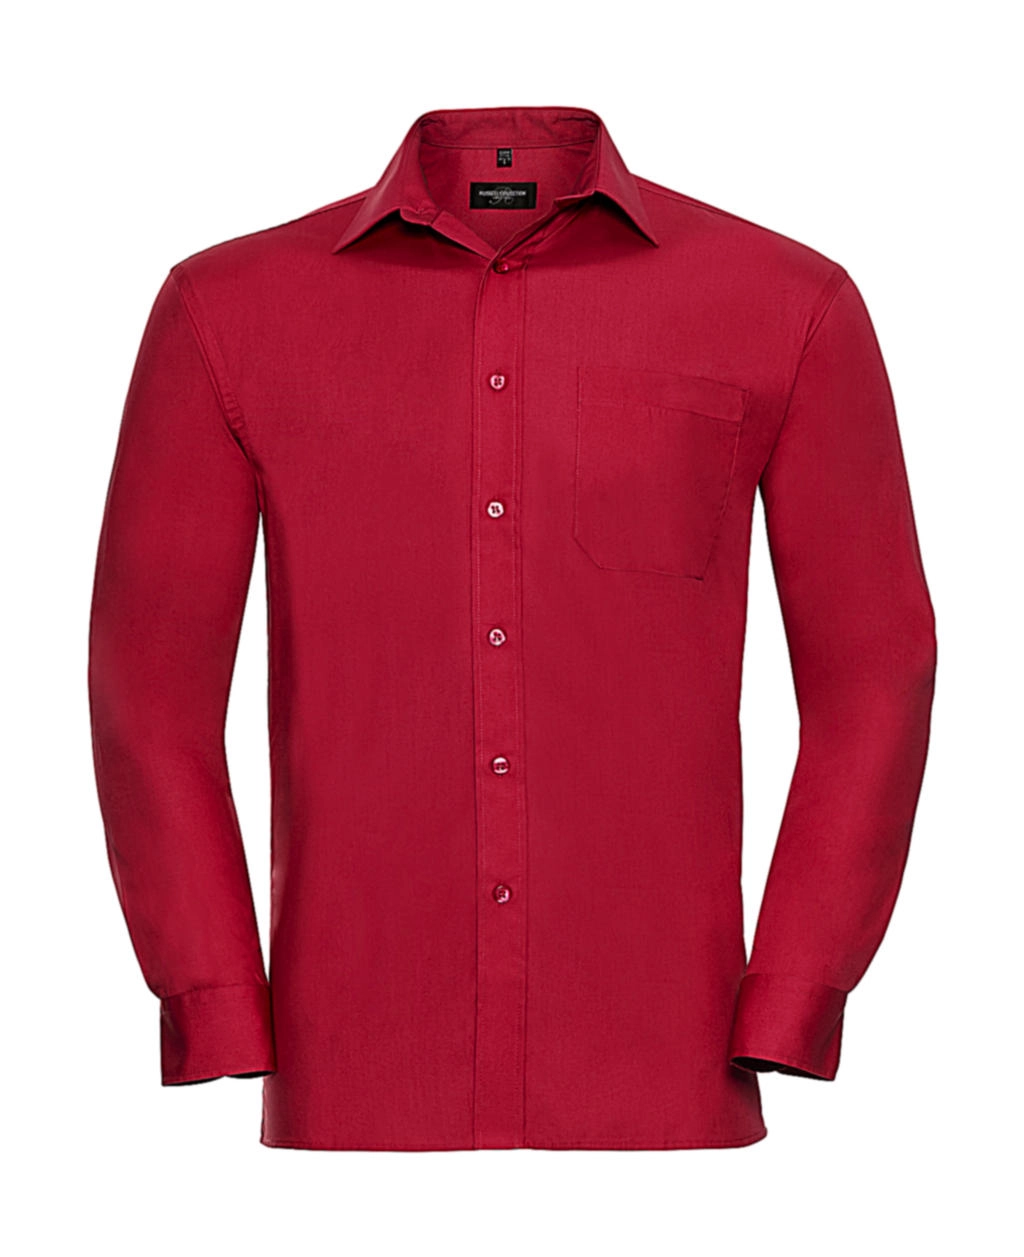 Cotton Poplin Shirt LS zum Besticken und Bedrucken in der Farbe Classic Red mit Ihren Logo, Schriftzug oder Motiv.